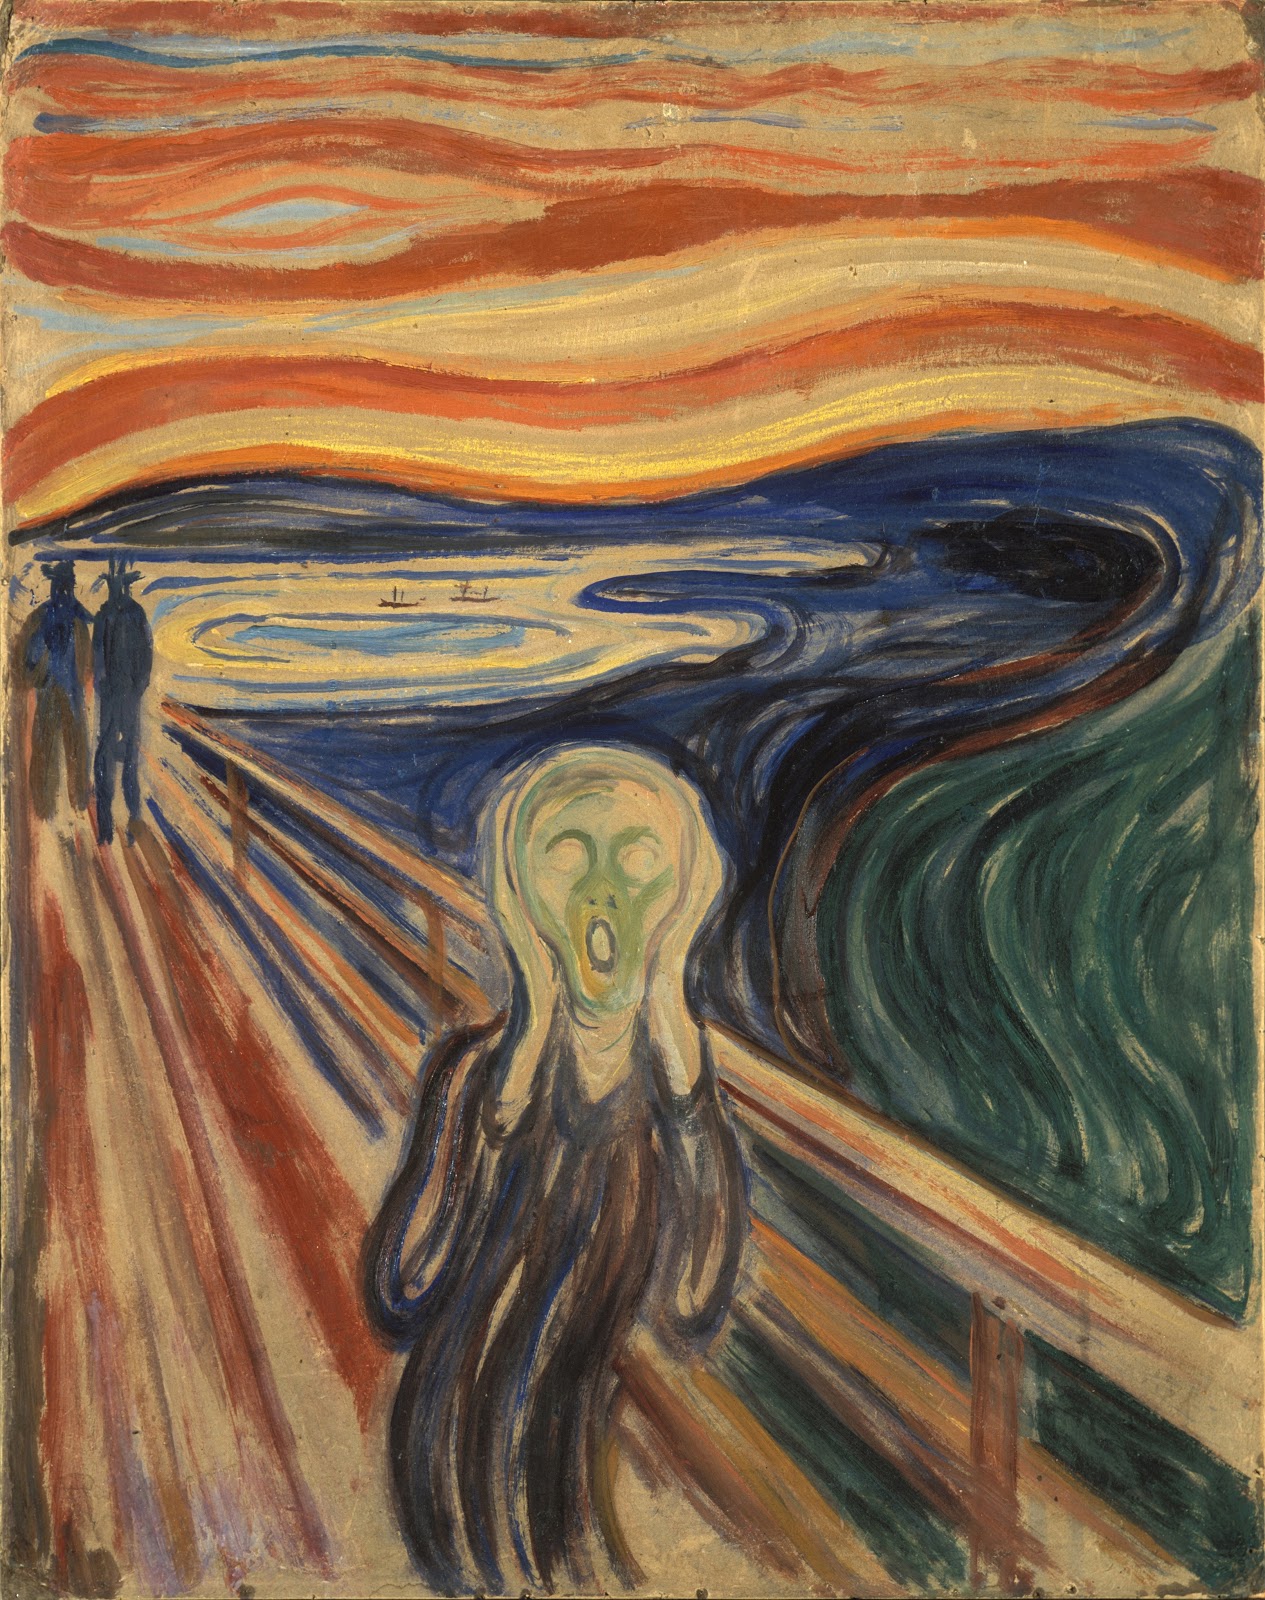 Edvard+Munch-1863-1944 (70).jpg